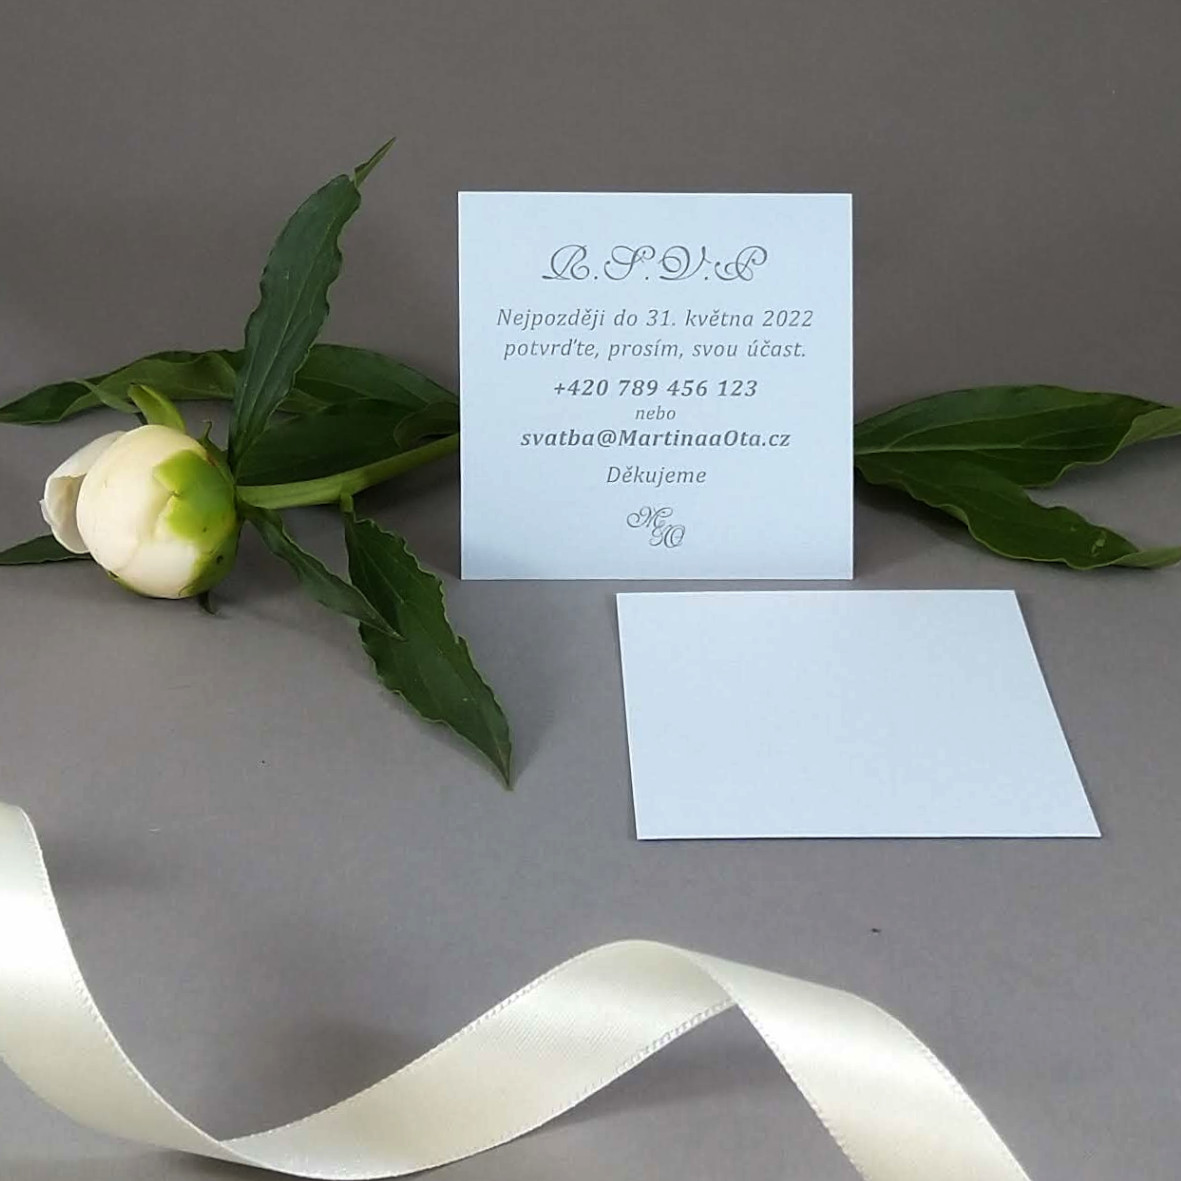 Pozvánka, informační karta z papíru ve světle modré barvě, formát 70 × 70 mm, jednostranná